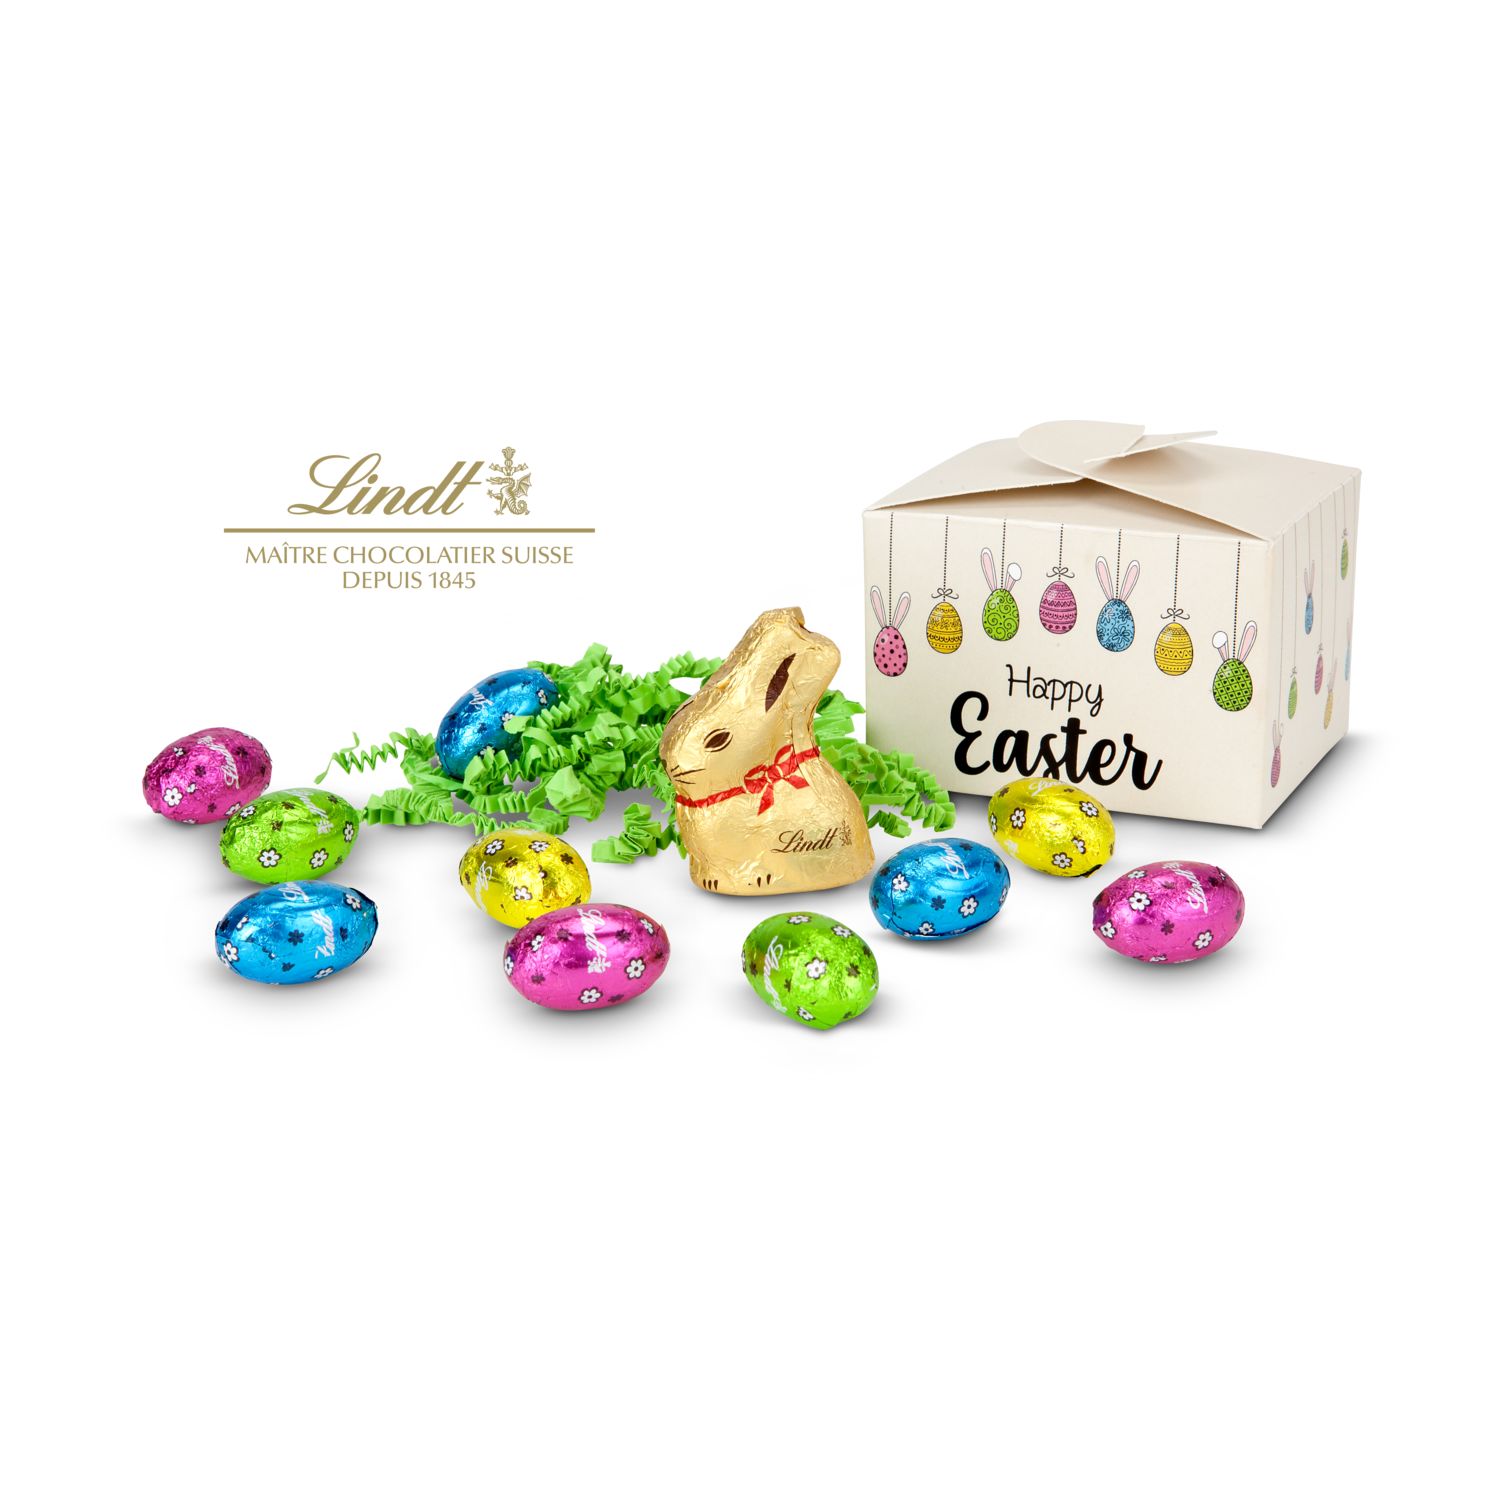 Geschenkartikel / Präsentartikel: Buntes Lindt Osternest - Lindt-Osterhase mit 10 Eiern, auch in individueller Pralinenschachtel